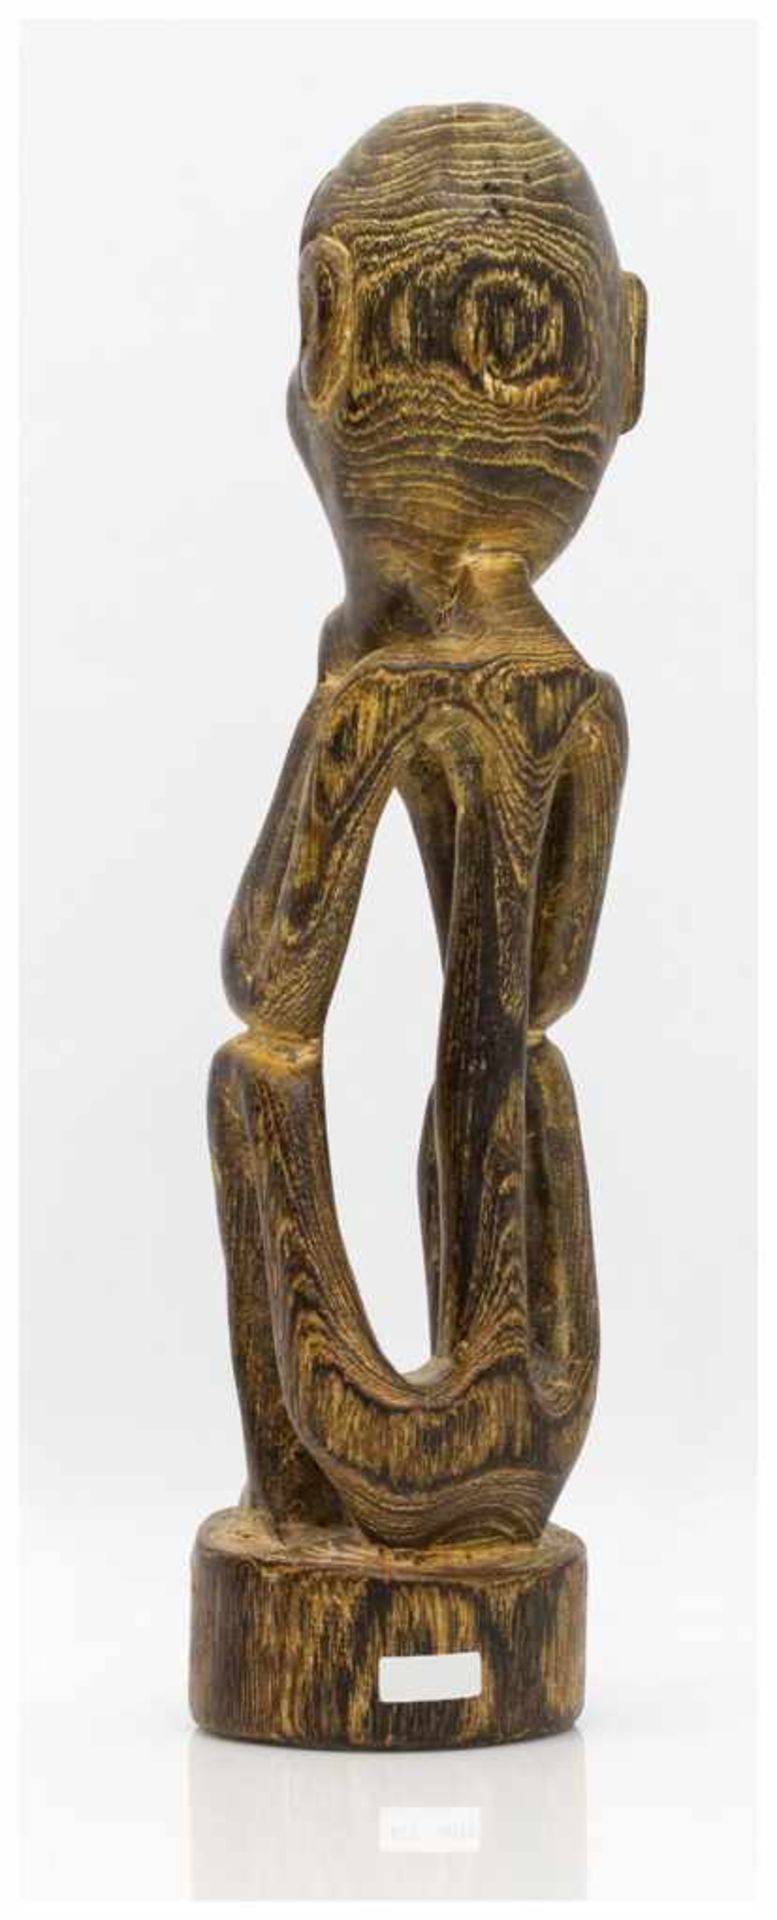 Ahnenfigur wohl Südsee 20. Jh., sitzende Ahnenfigur mit aufgestütztem Kinn, Holz geschnitzt, H. 30 - Bild 2 aus 2